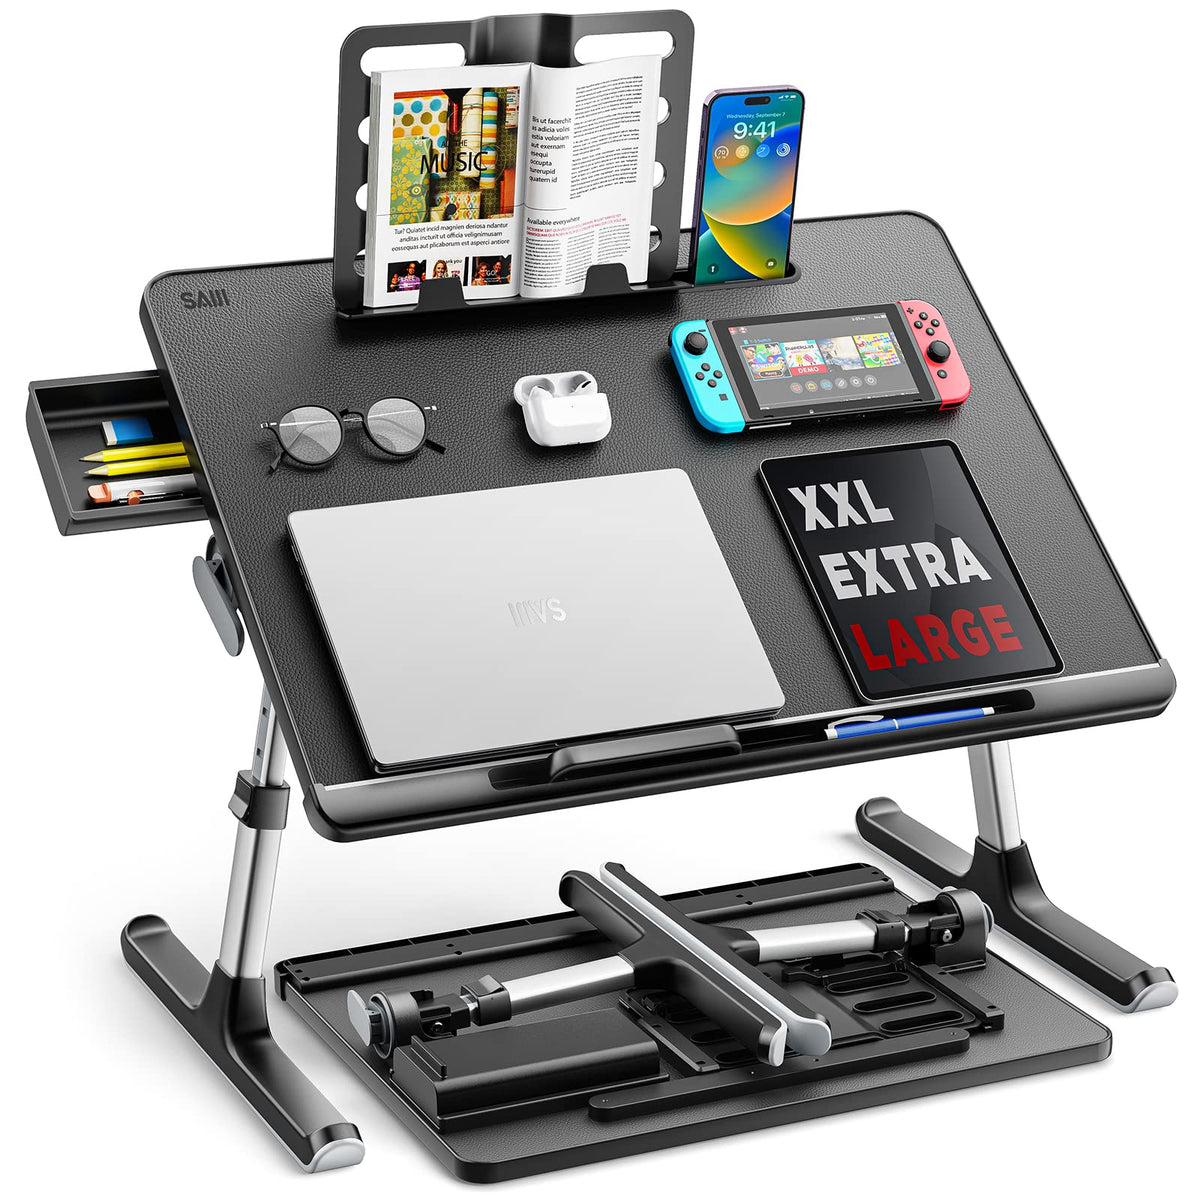 SAIJI X-Large Adjustable Laptop Table with Storage Drawer